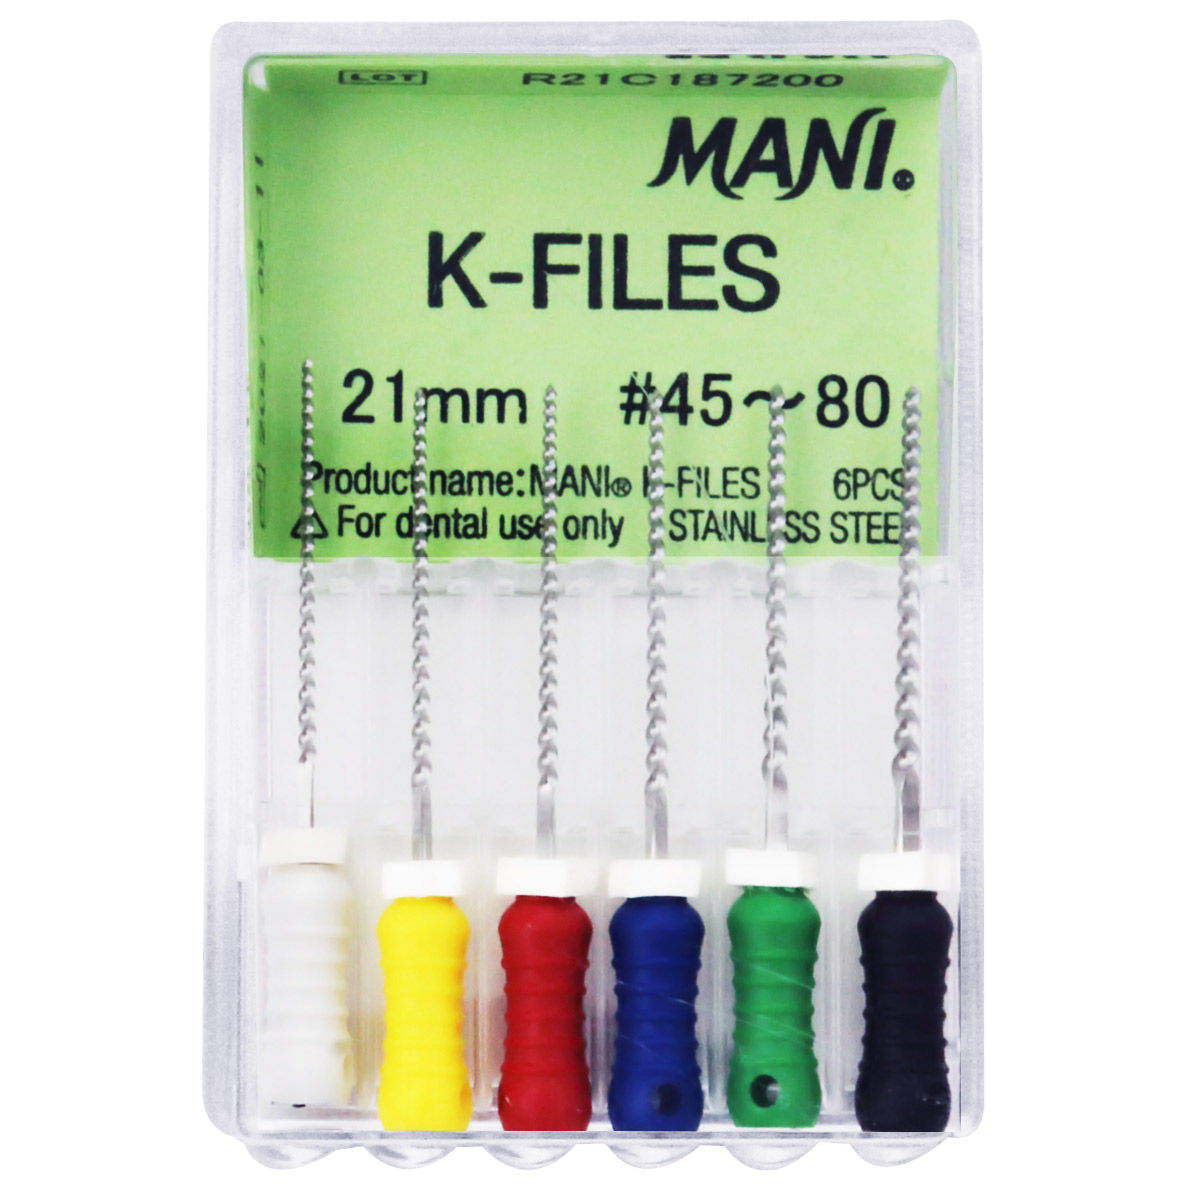 K-File 21mm #45-80 - Mani